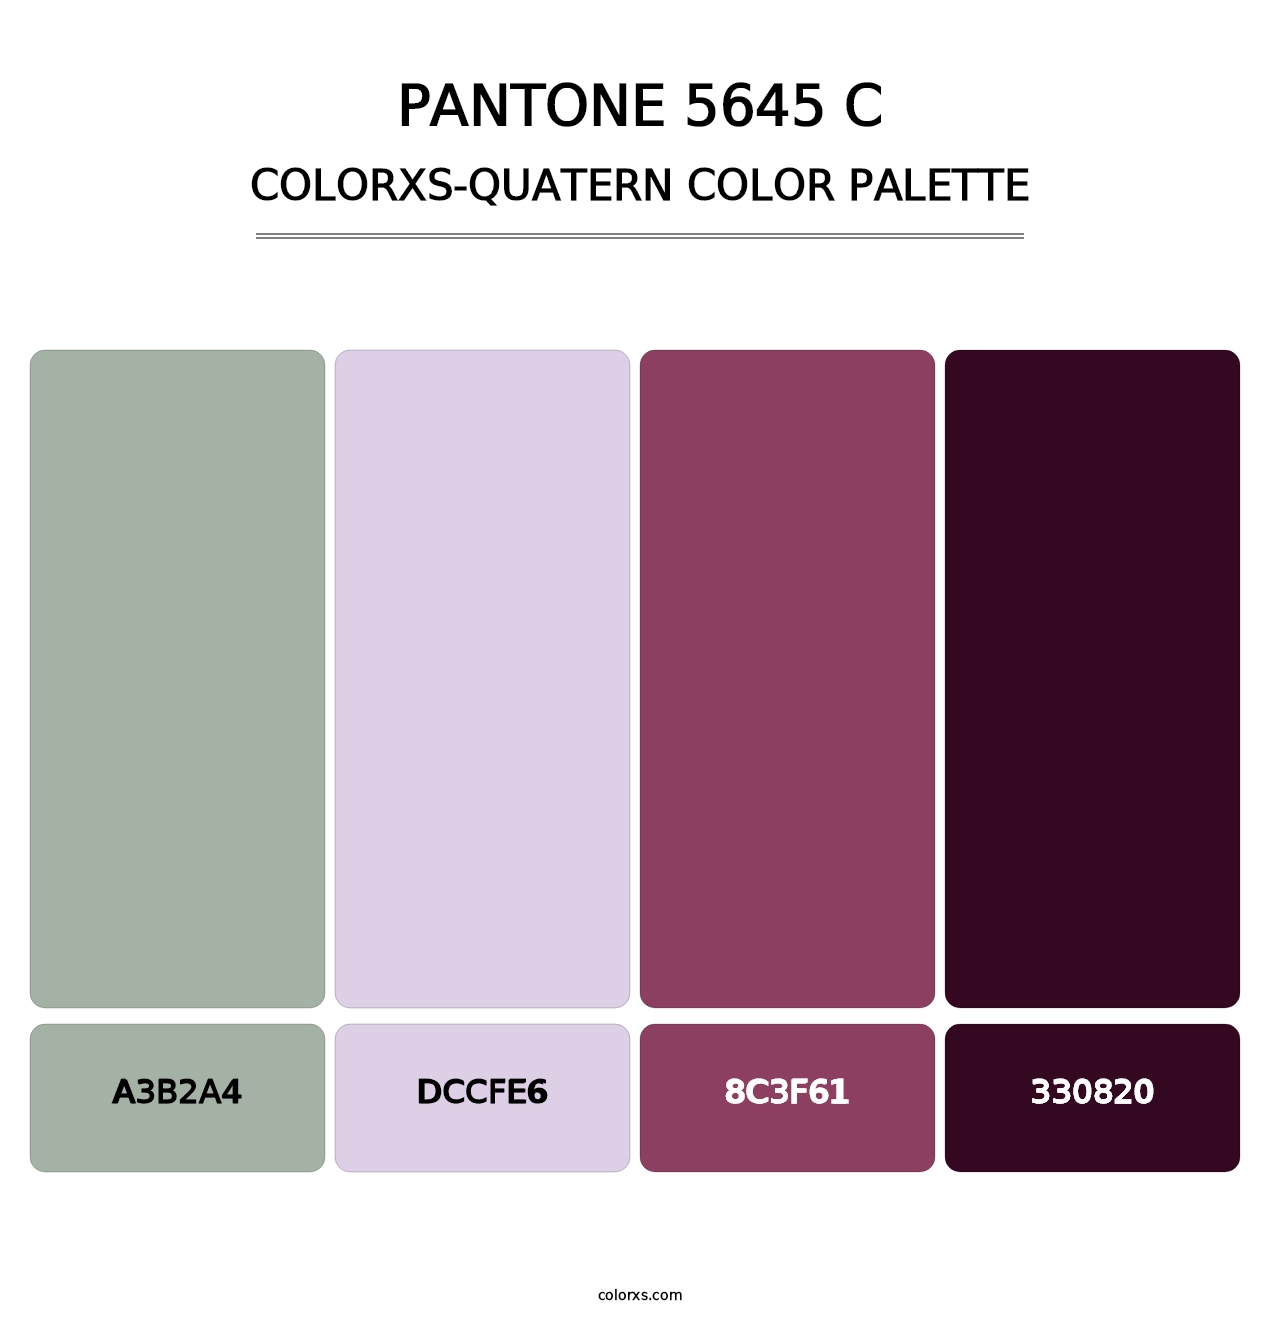 PANTONE 5645 C - Colorxs Quatern Palette